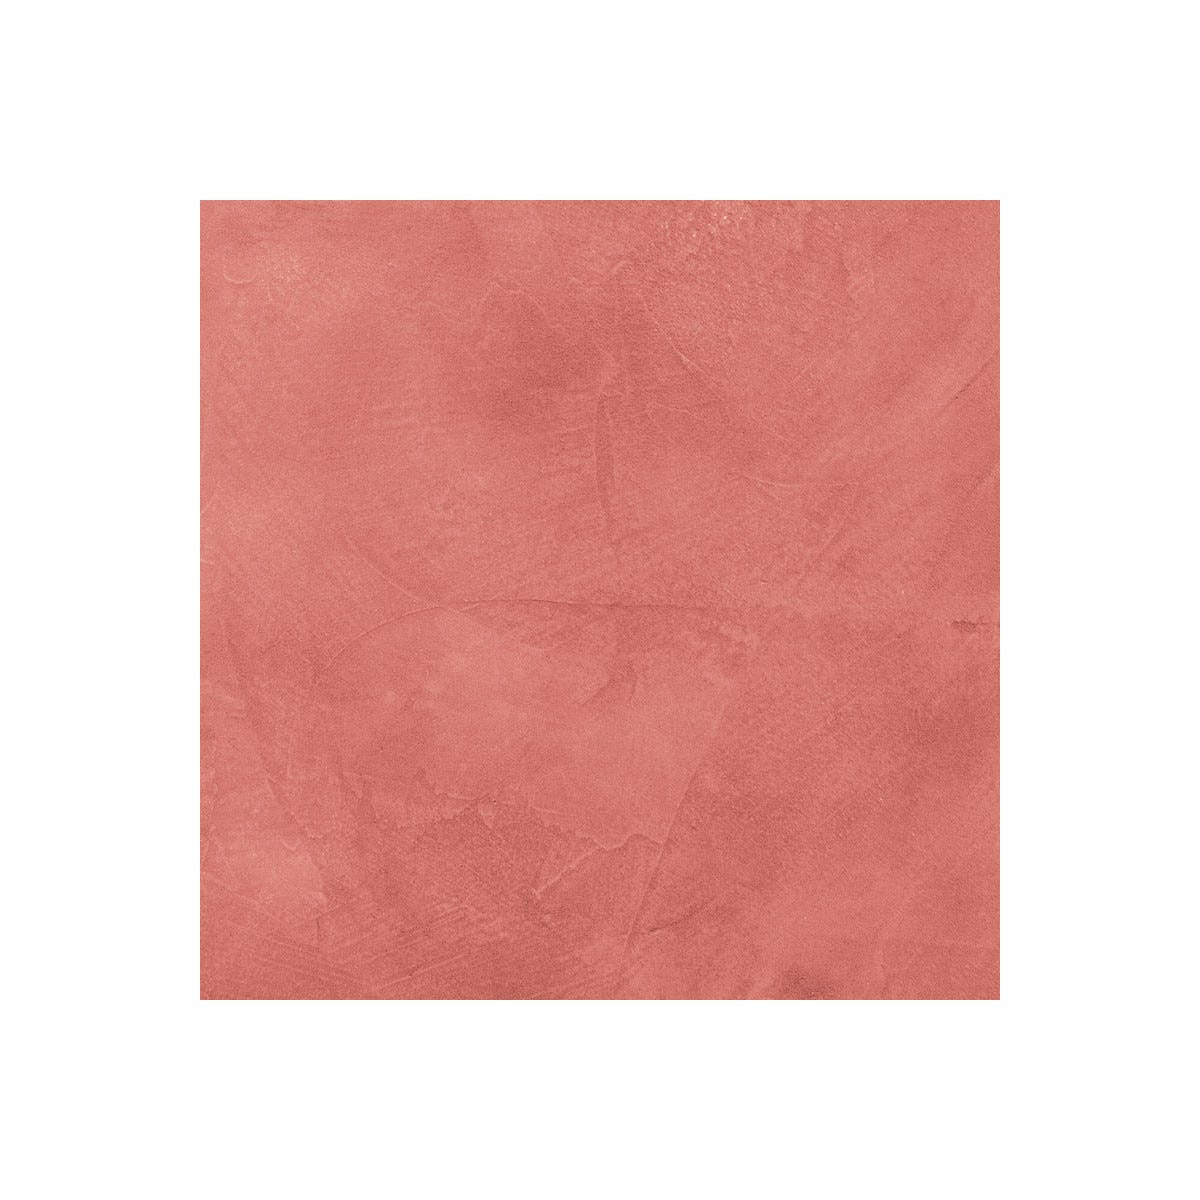 BETON CIRE CARRELAGE POUR SOLS ET MURS - KIT BETON CIRE SUR CARRELAGE - 2 m² (en 2 couches) - Papaye Rose Orange - ARCANE INDUSTRIES 1